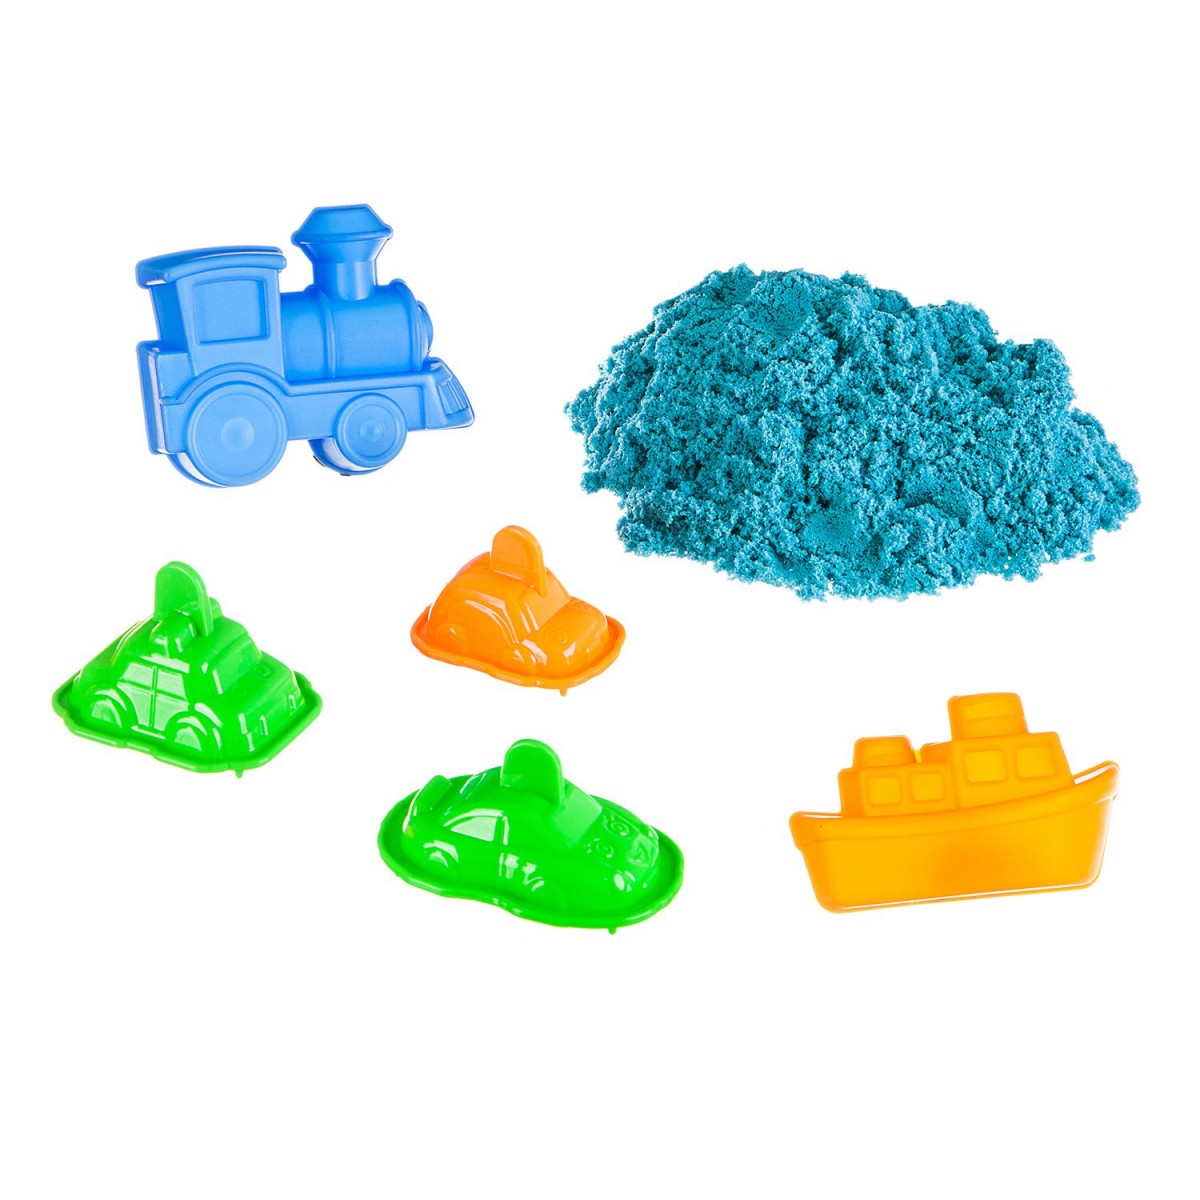 Набор игровой Вondibon Марсианский песок, 500г голубой, 5 формочек (транспорт).